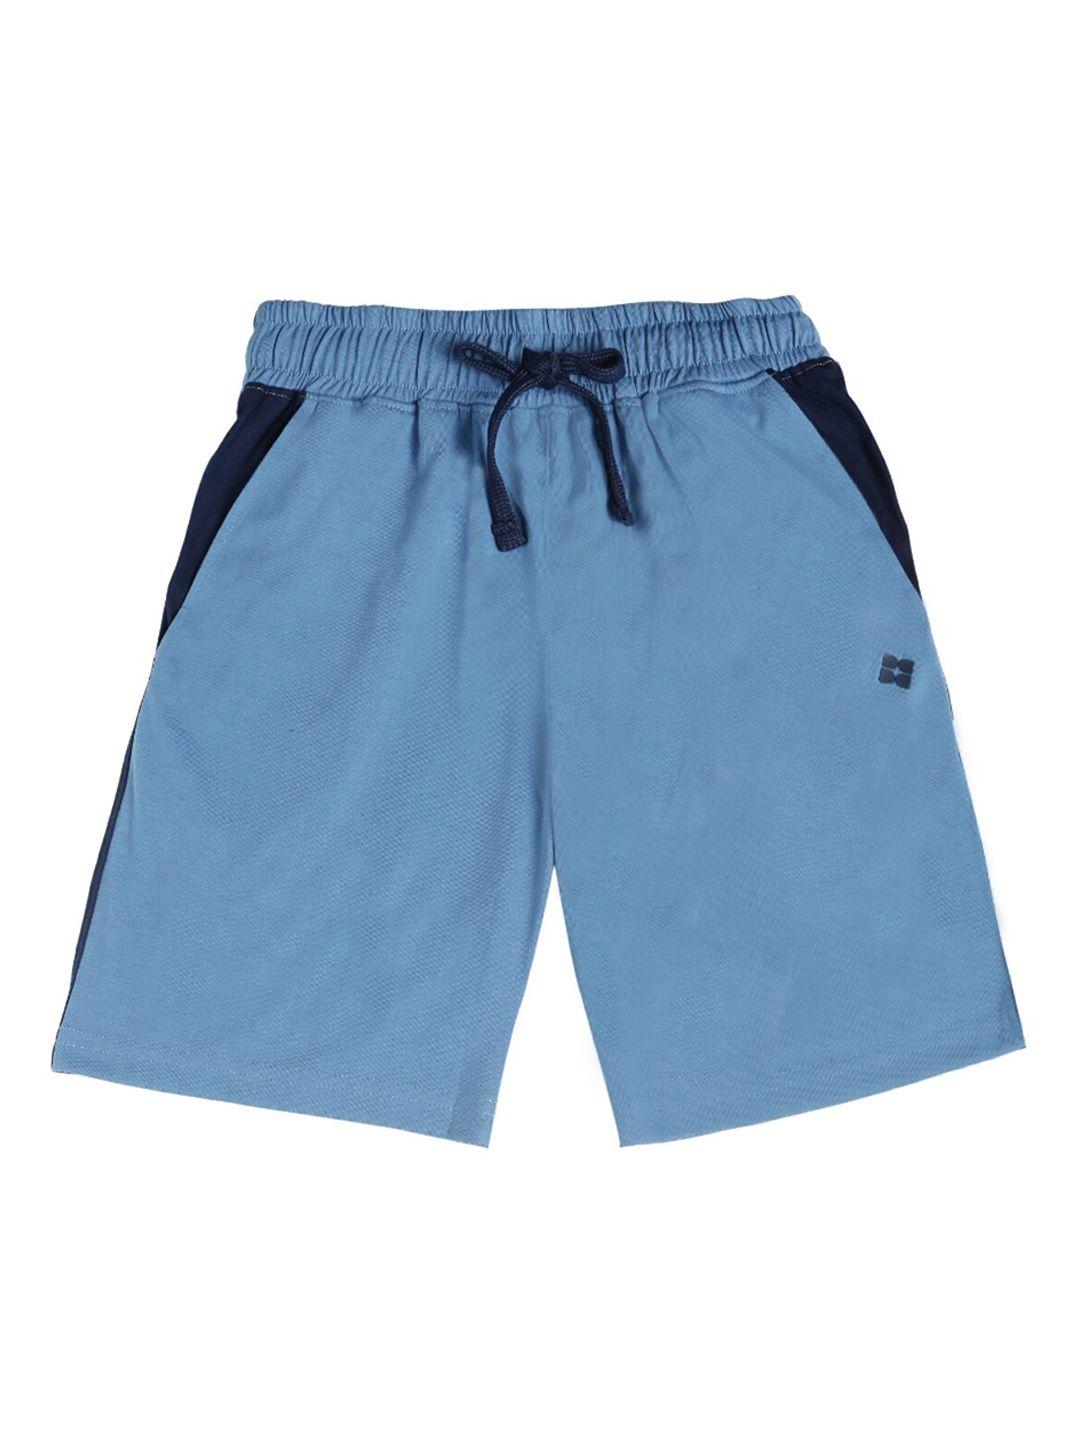 dollar boys blue colourblocked regular fit regular shorts